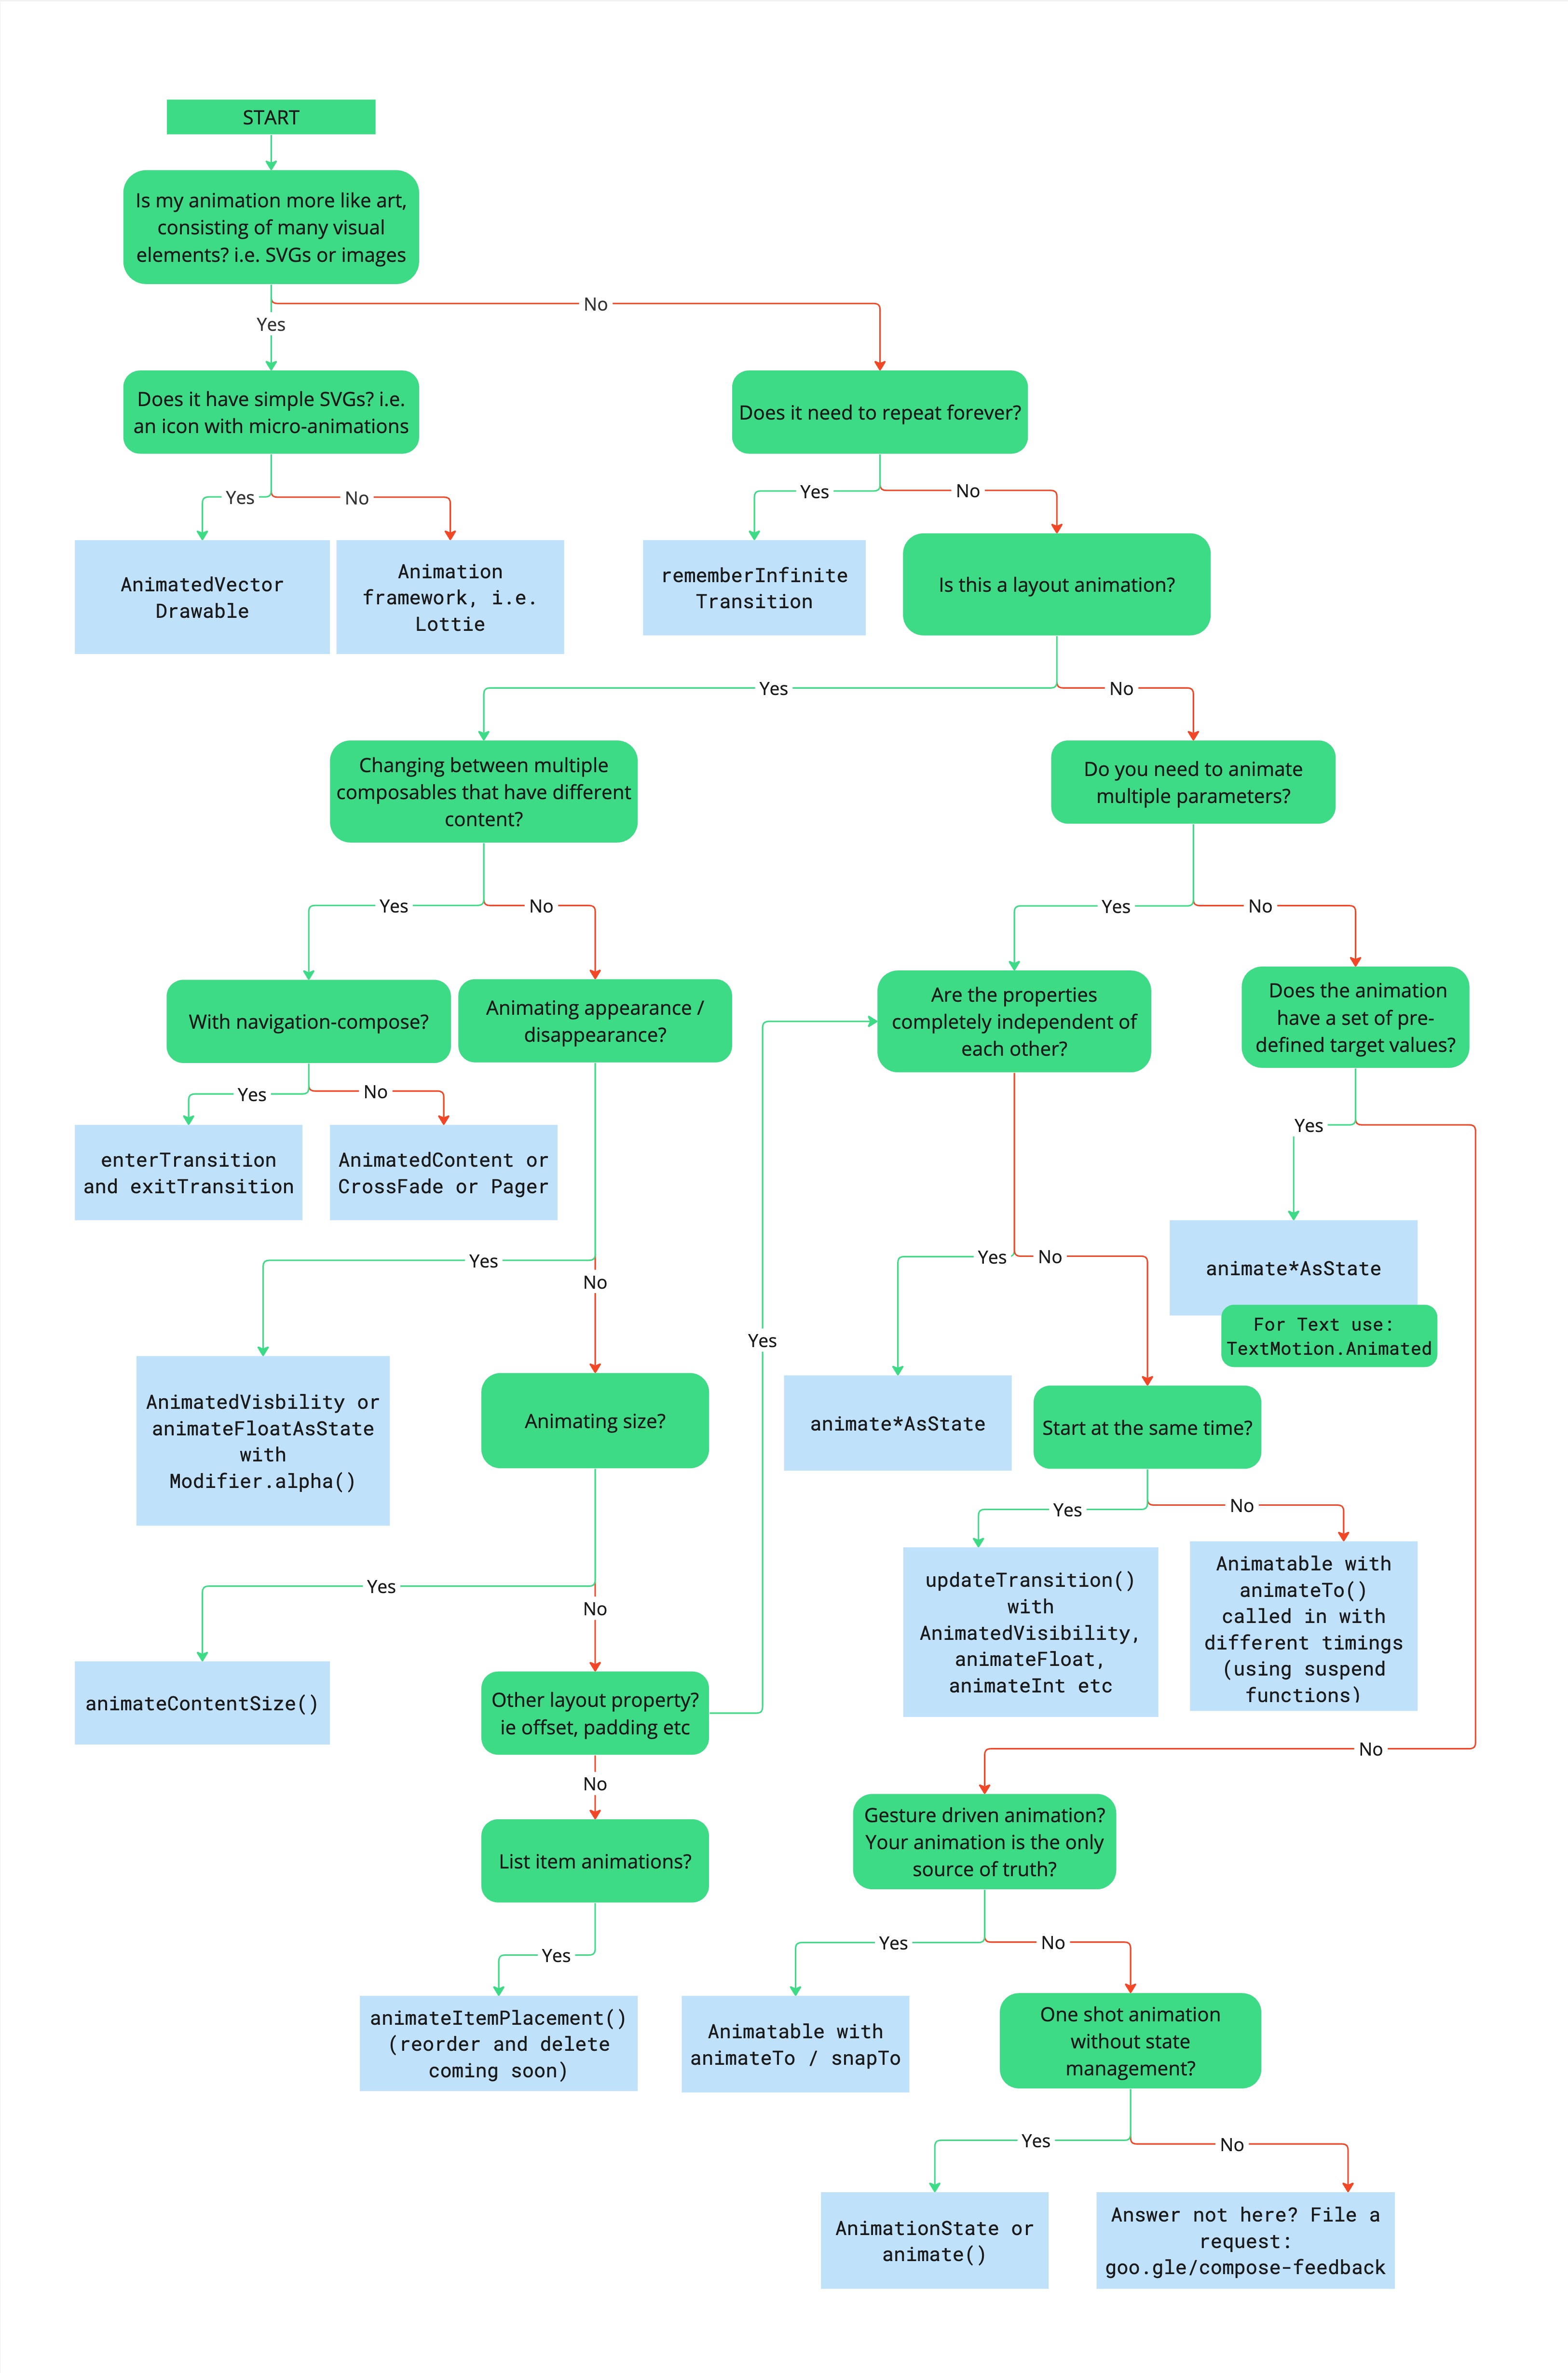 Sơ đồ quy trình mô tả cây quyết định để chọn API ảnh động thích hợp